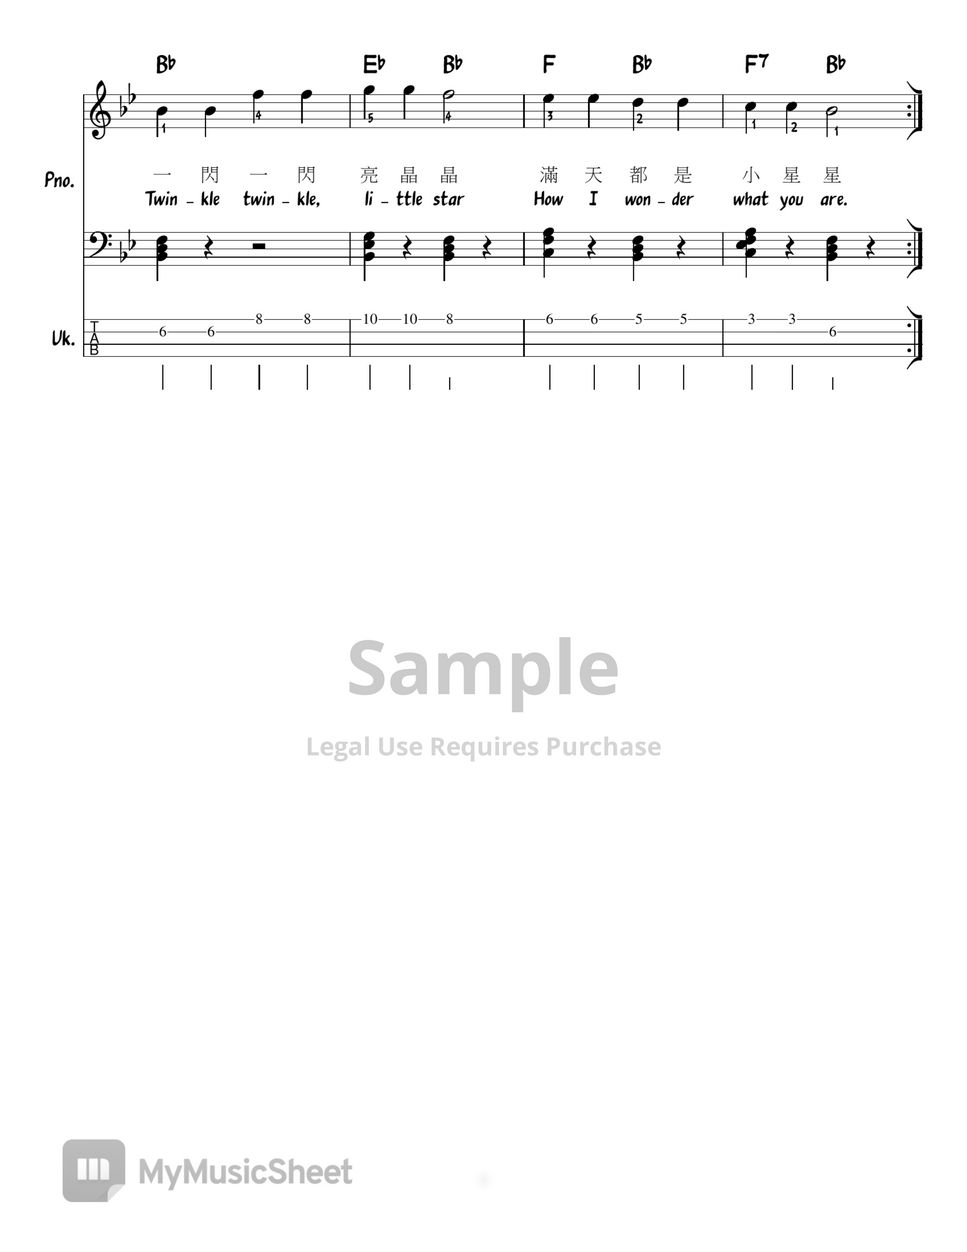 Mozart - Twinkle twinkle little stars in all 12 keys  (Chord/Melody/Piano/Ukulele tab) (Lead Sheet) Sheets